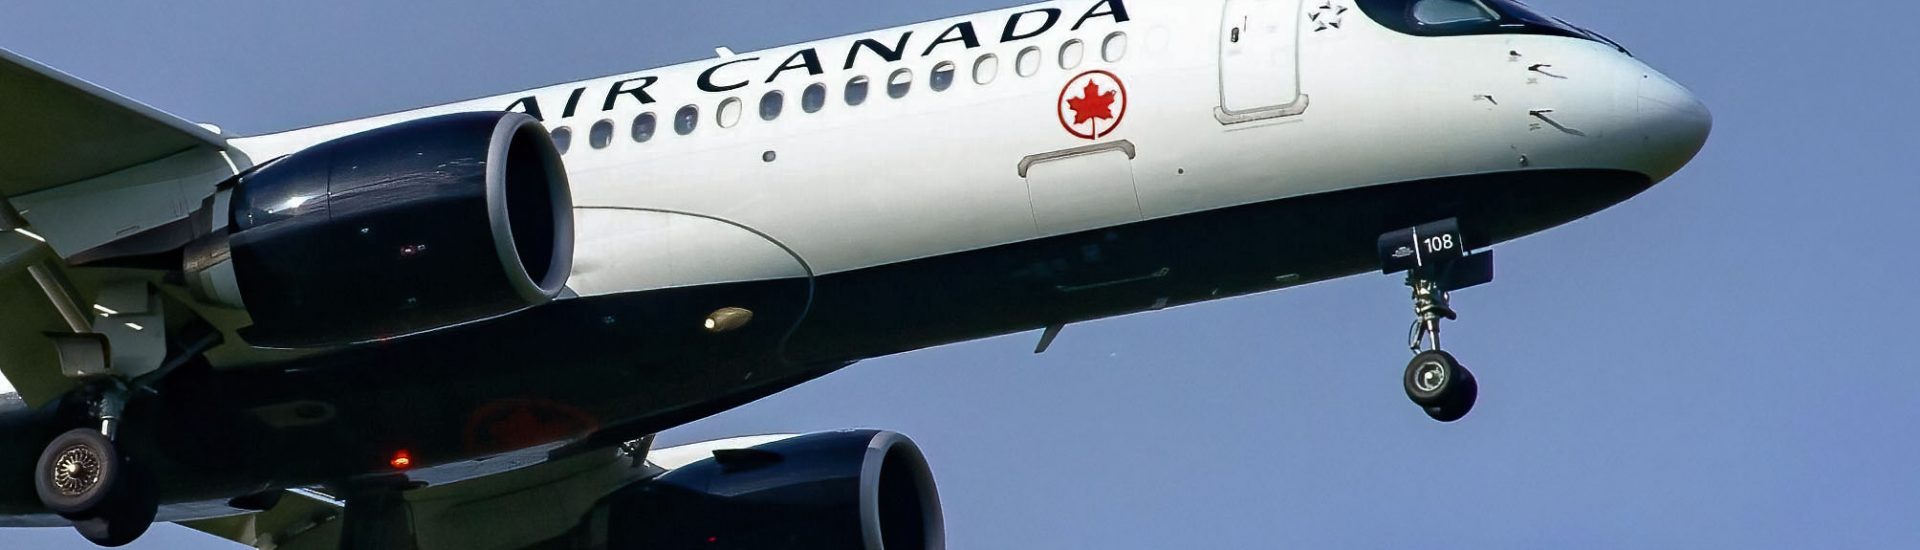 A220-300 Air Canada C-GJYC